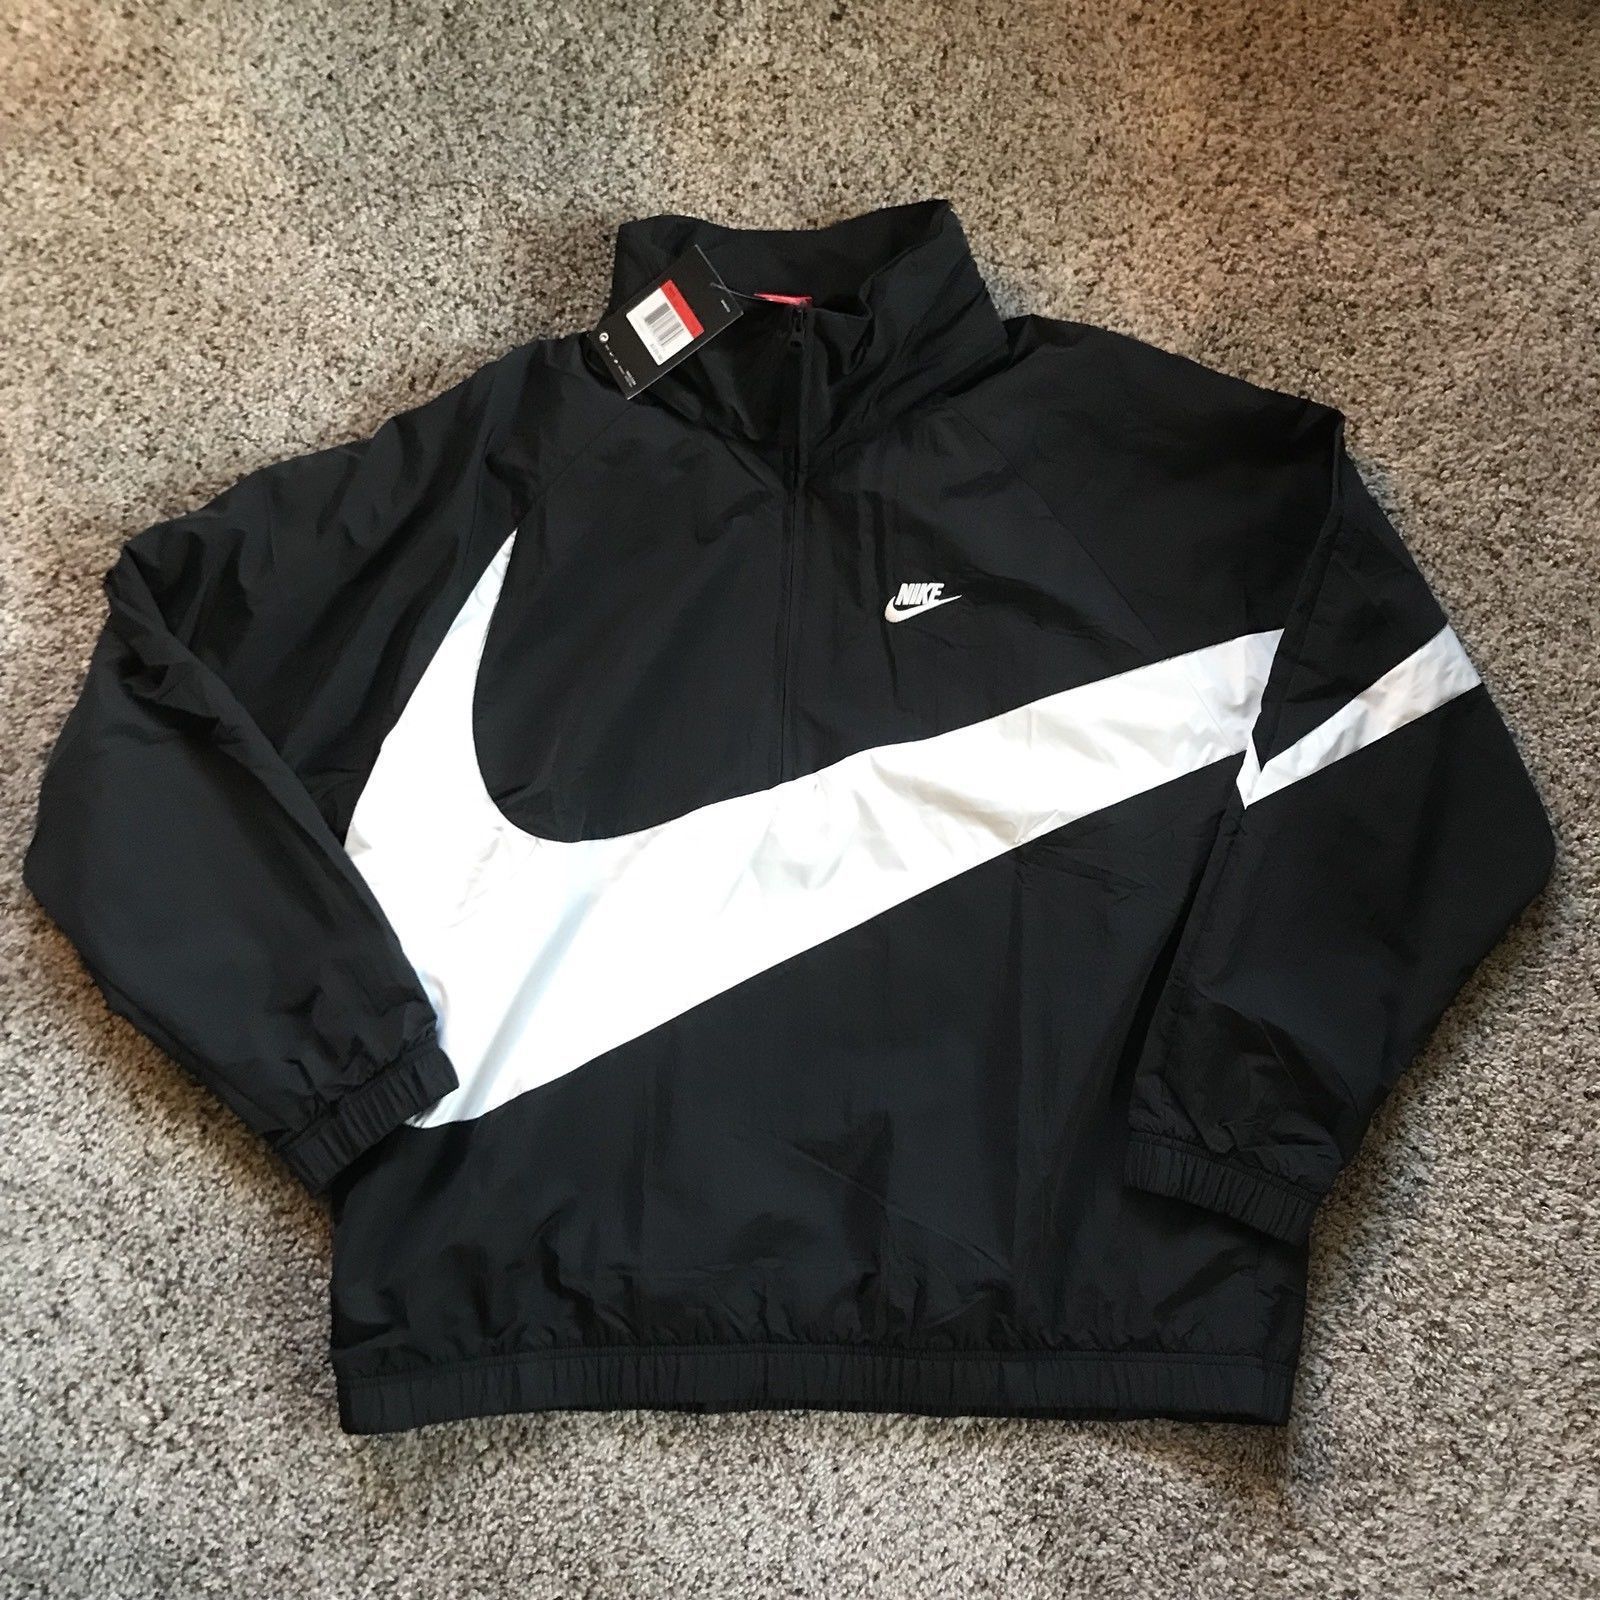 Les plus belles vestes vintages de Nike sur eBay !